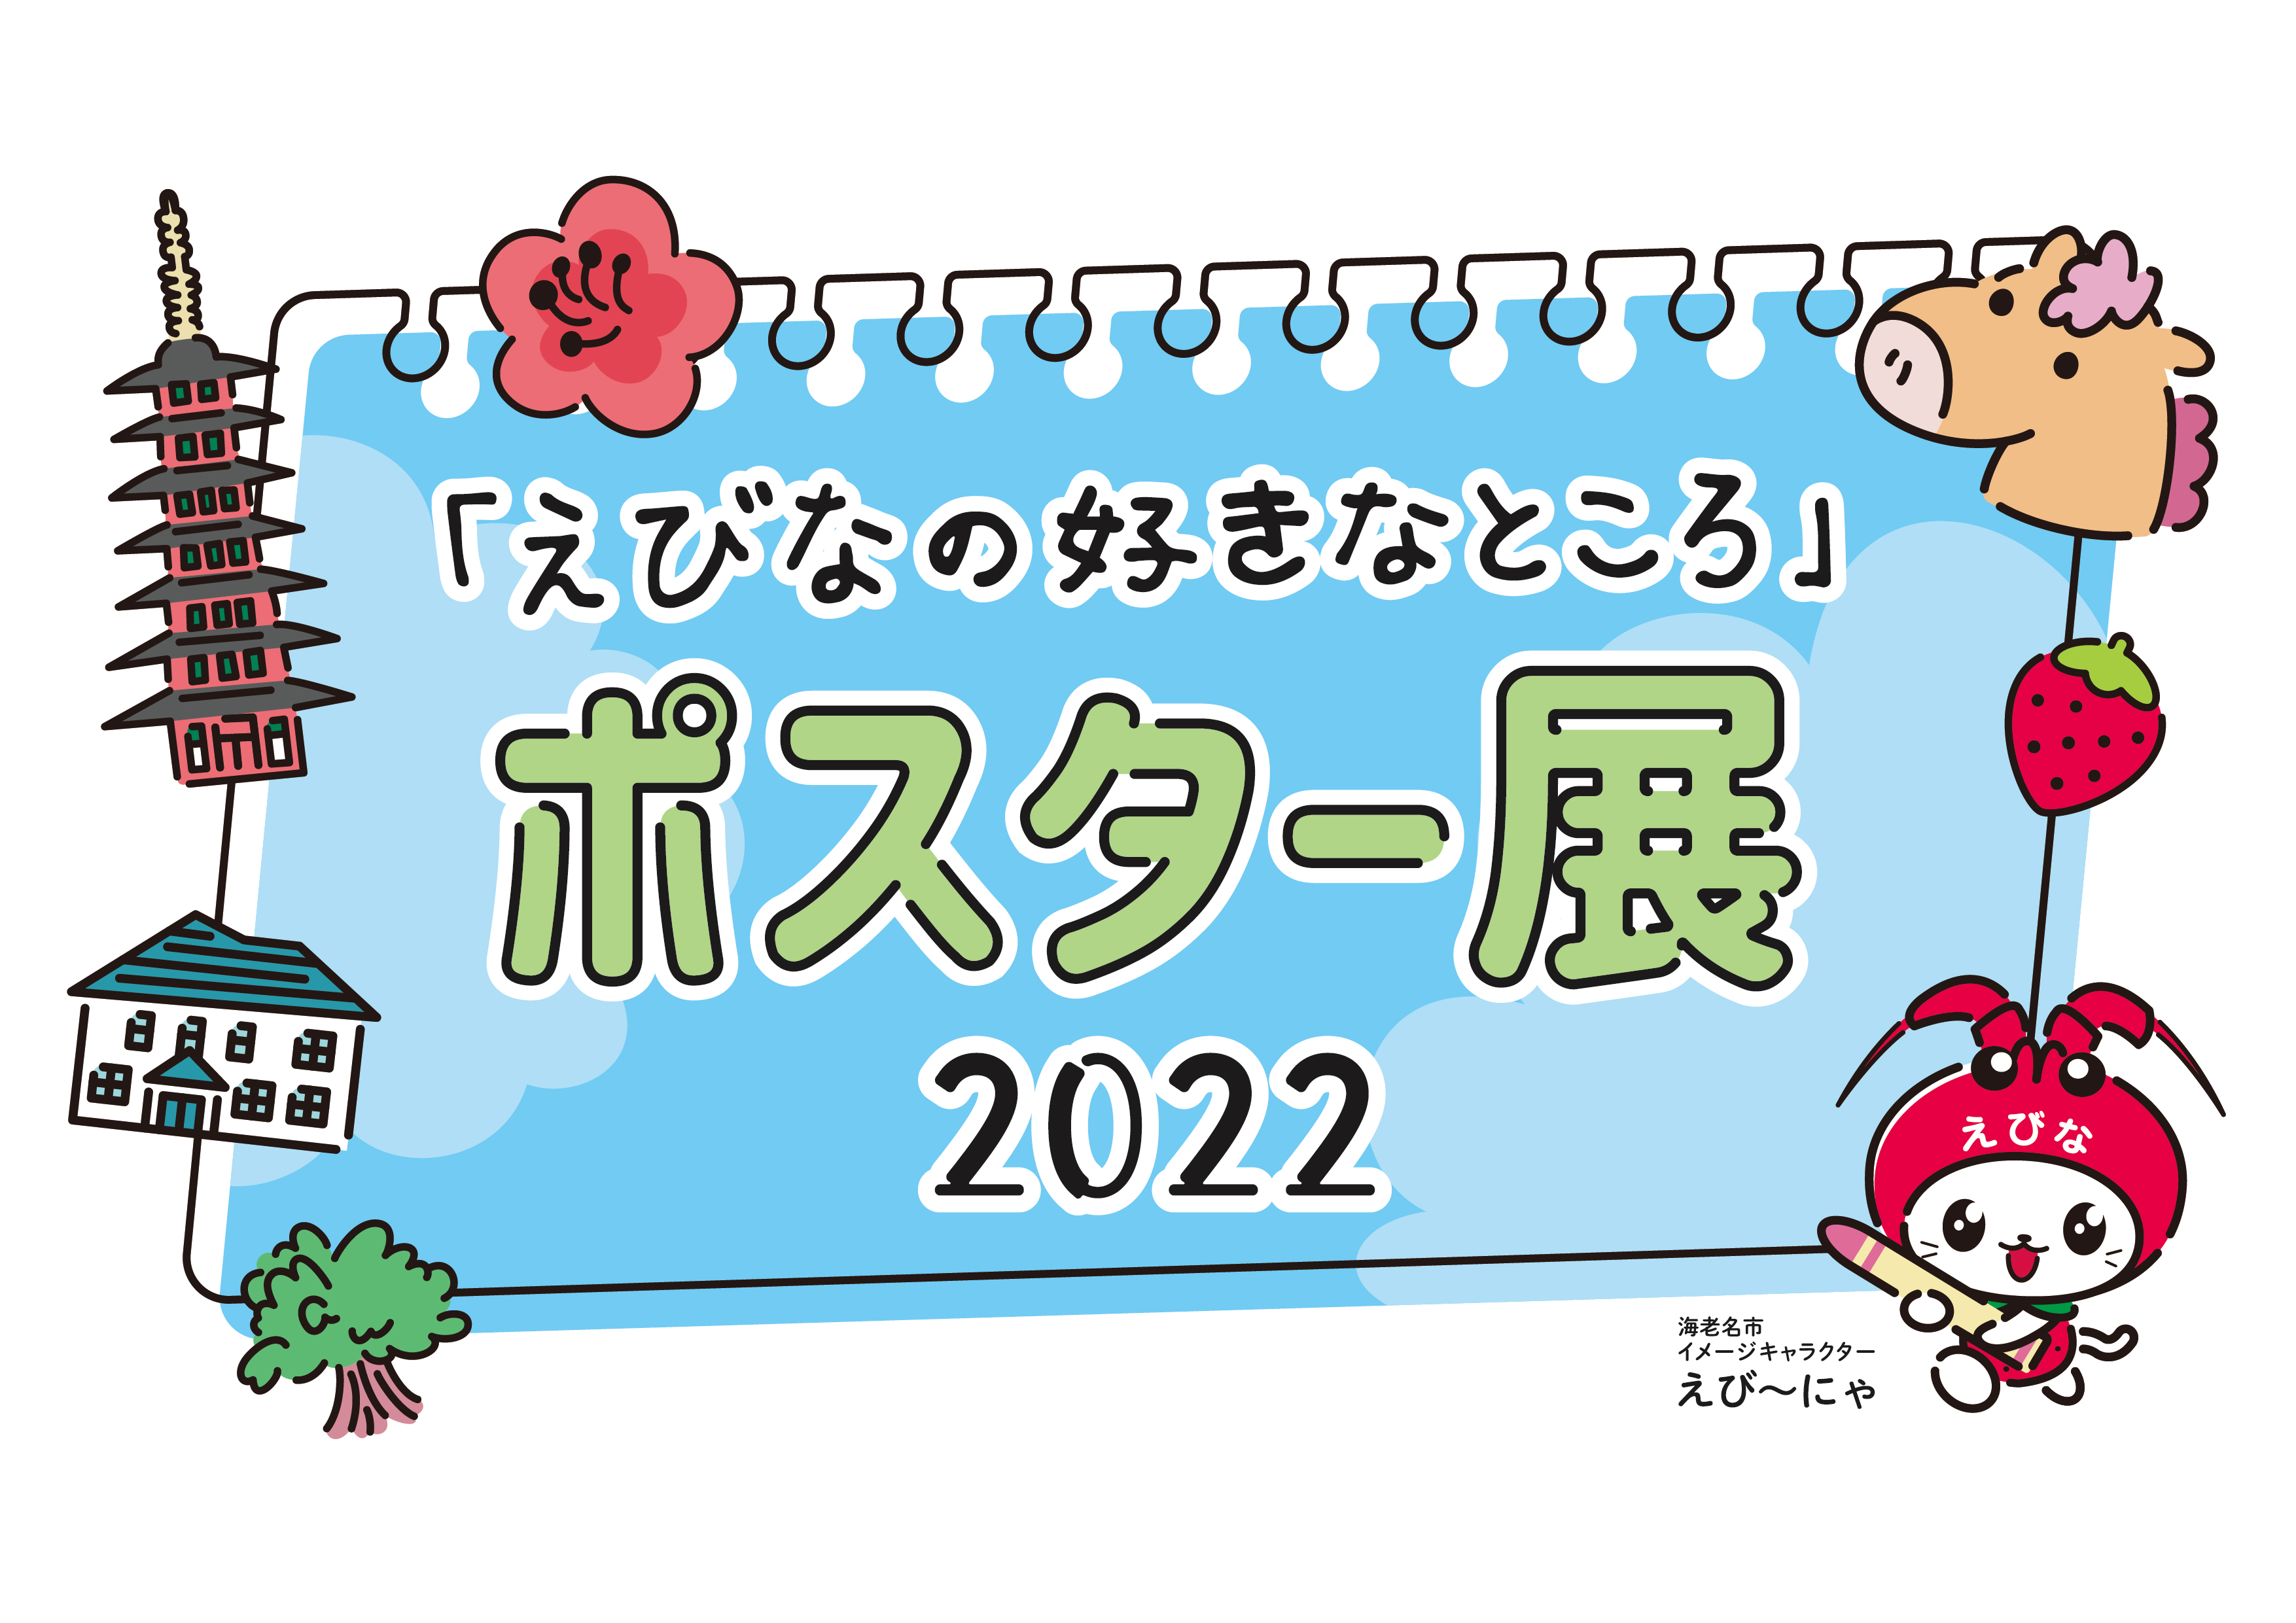 えびなの好きなところポスター展2022_ロゴ